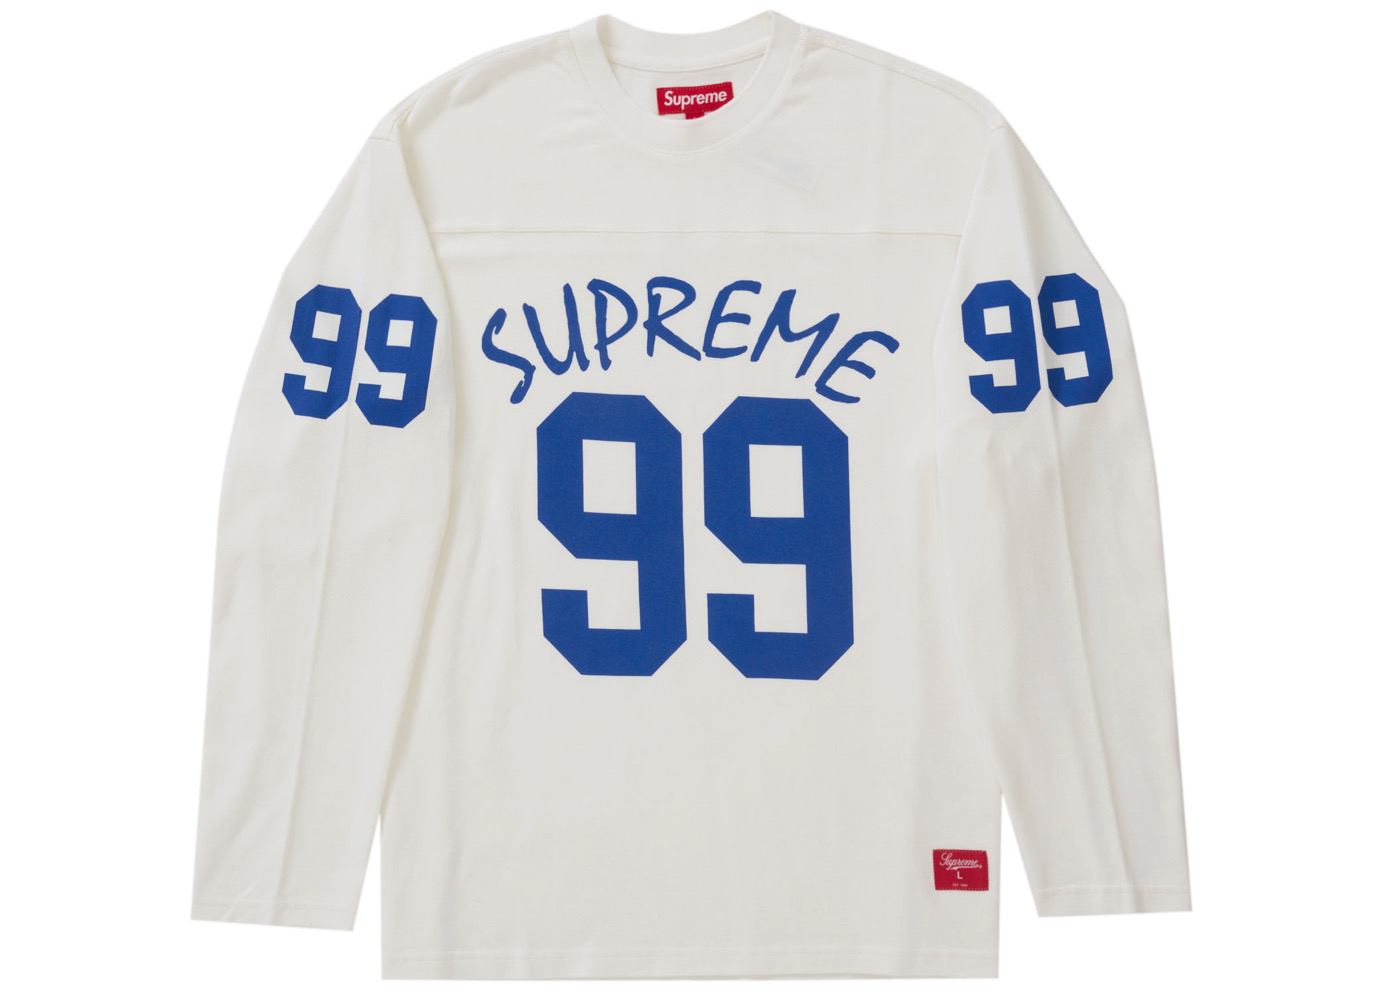 supremeSupreme 99 L/S Football Top \